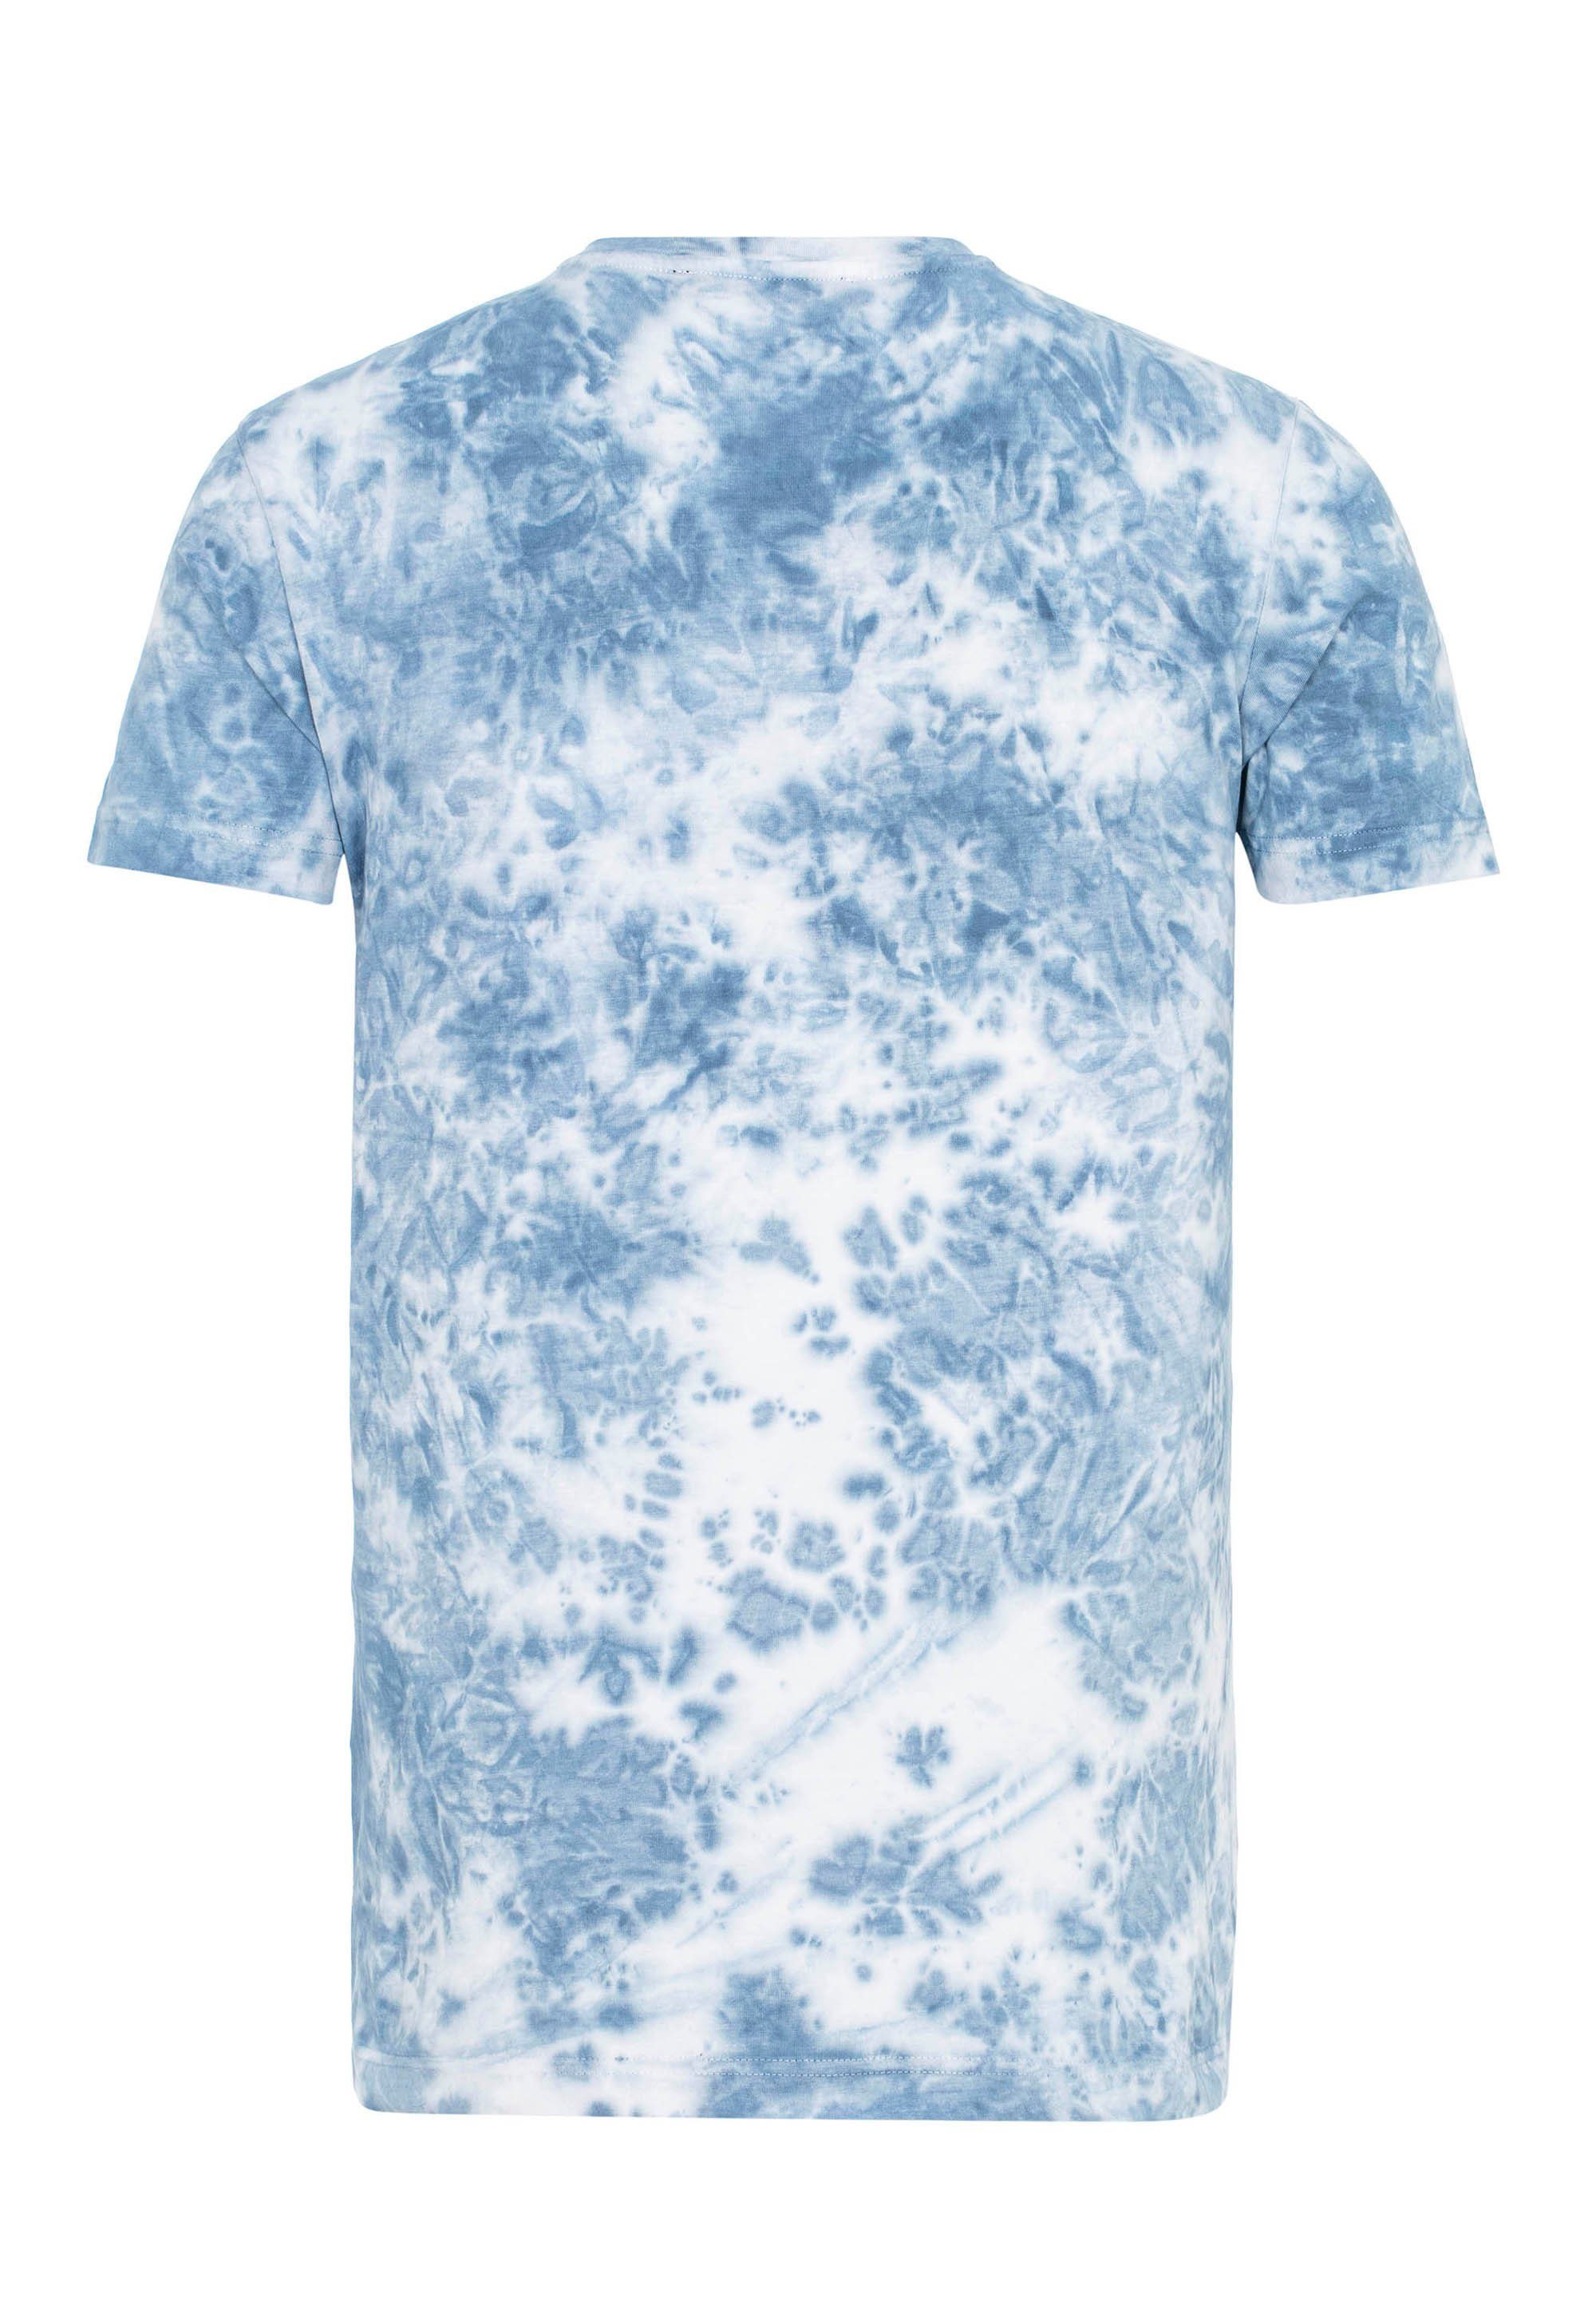 mit & coolem Cipo T-Shirt Aufdruck Baxx blau CT629